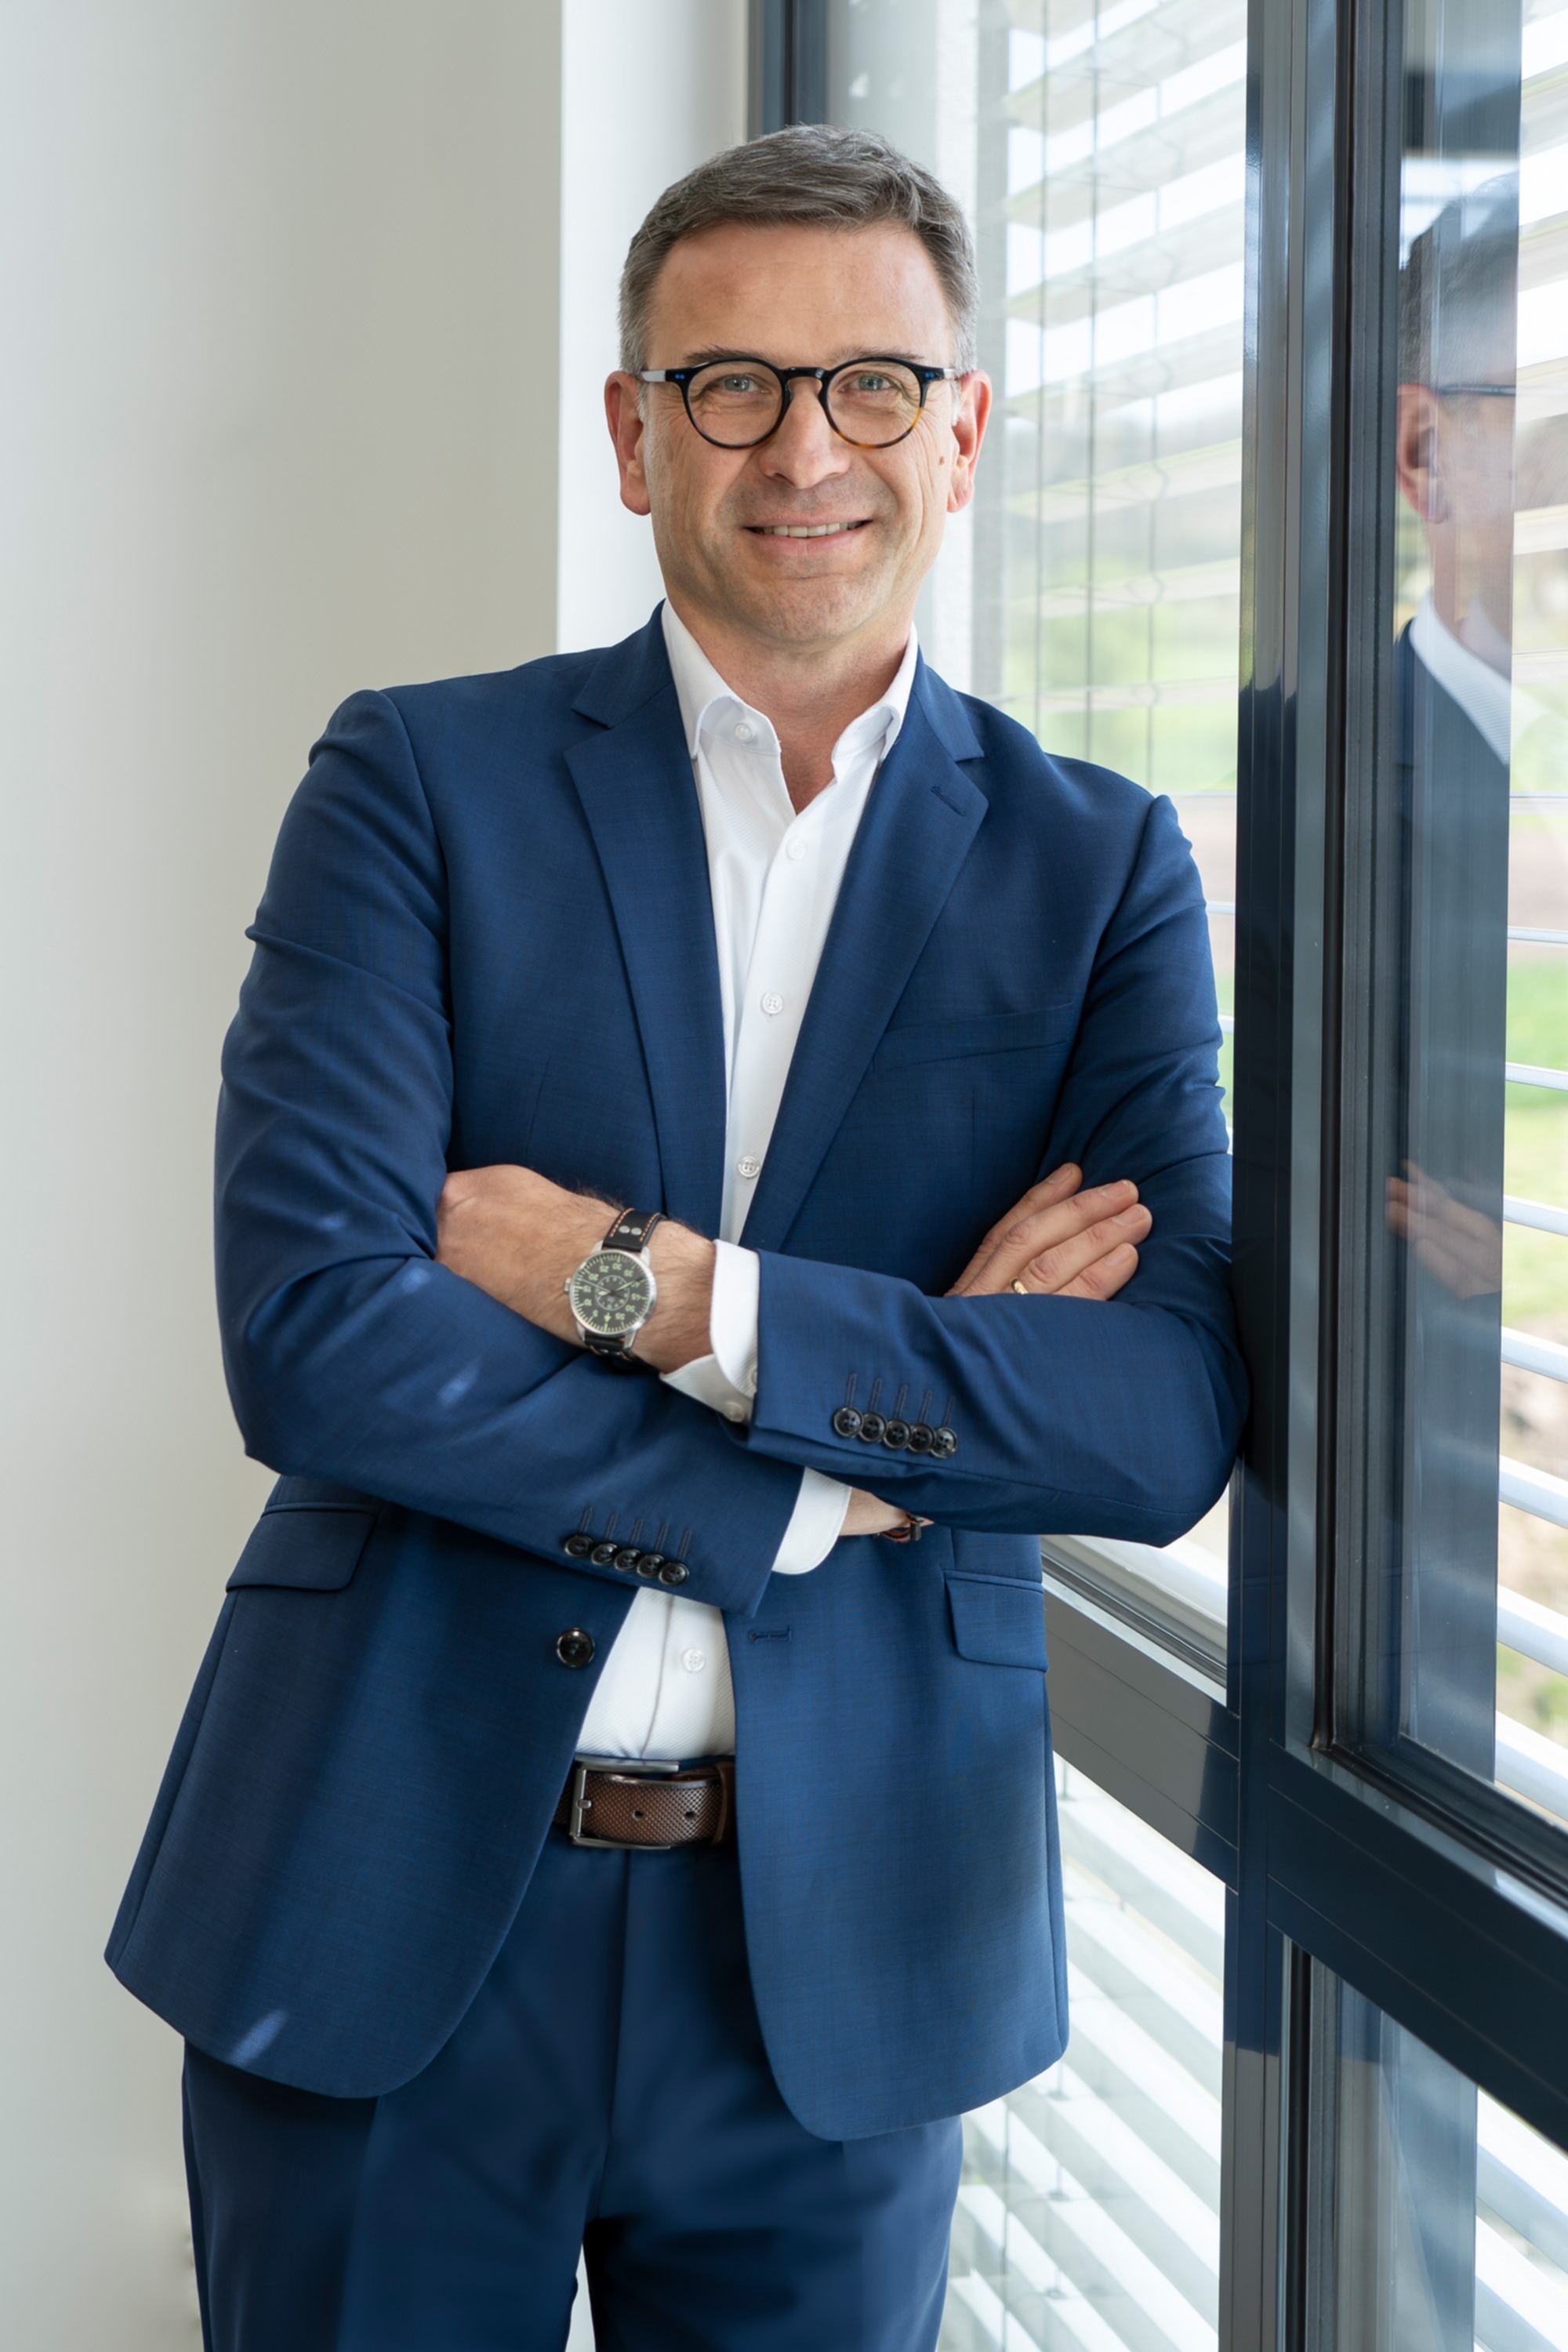 René Leroux ist seit 2022 Geschäftsführer und COO der Bott Gruppe